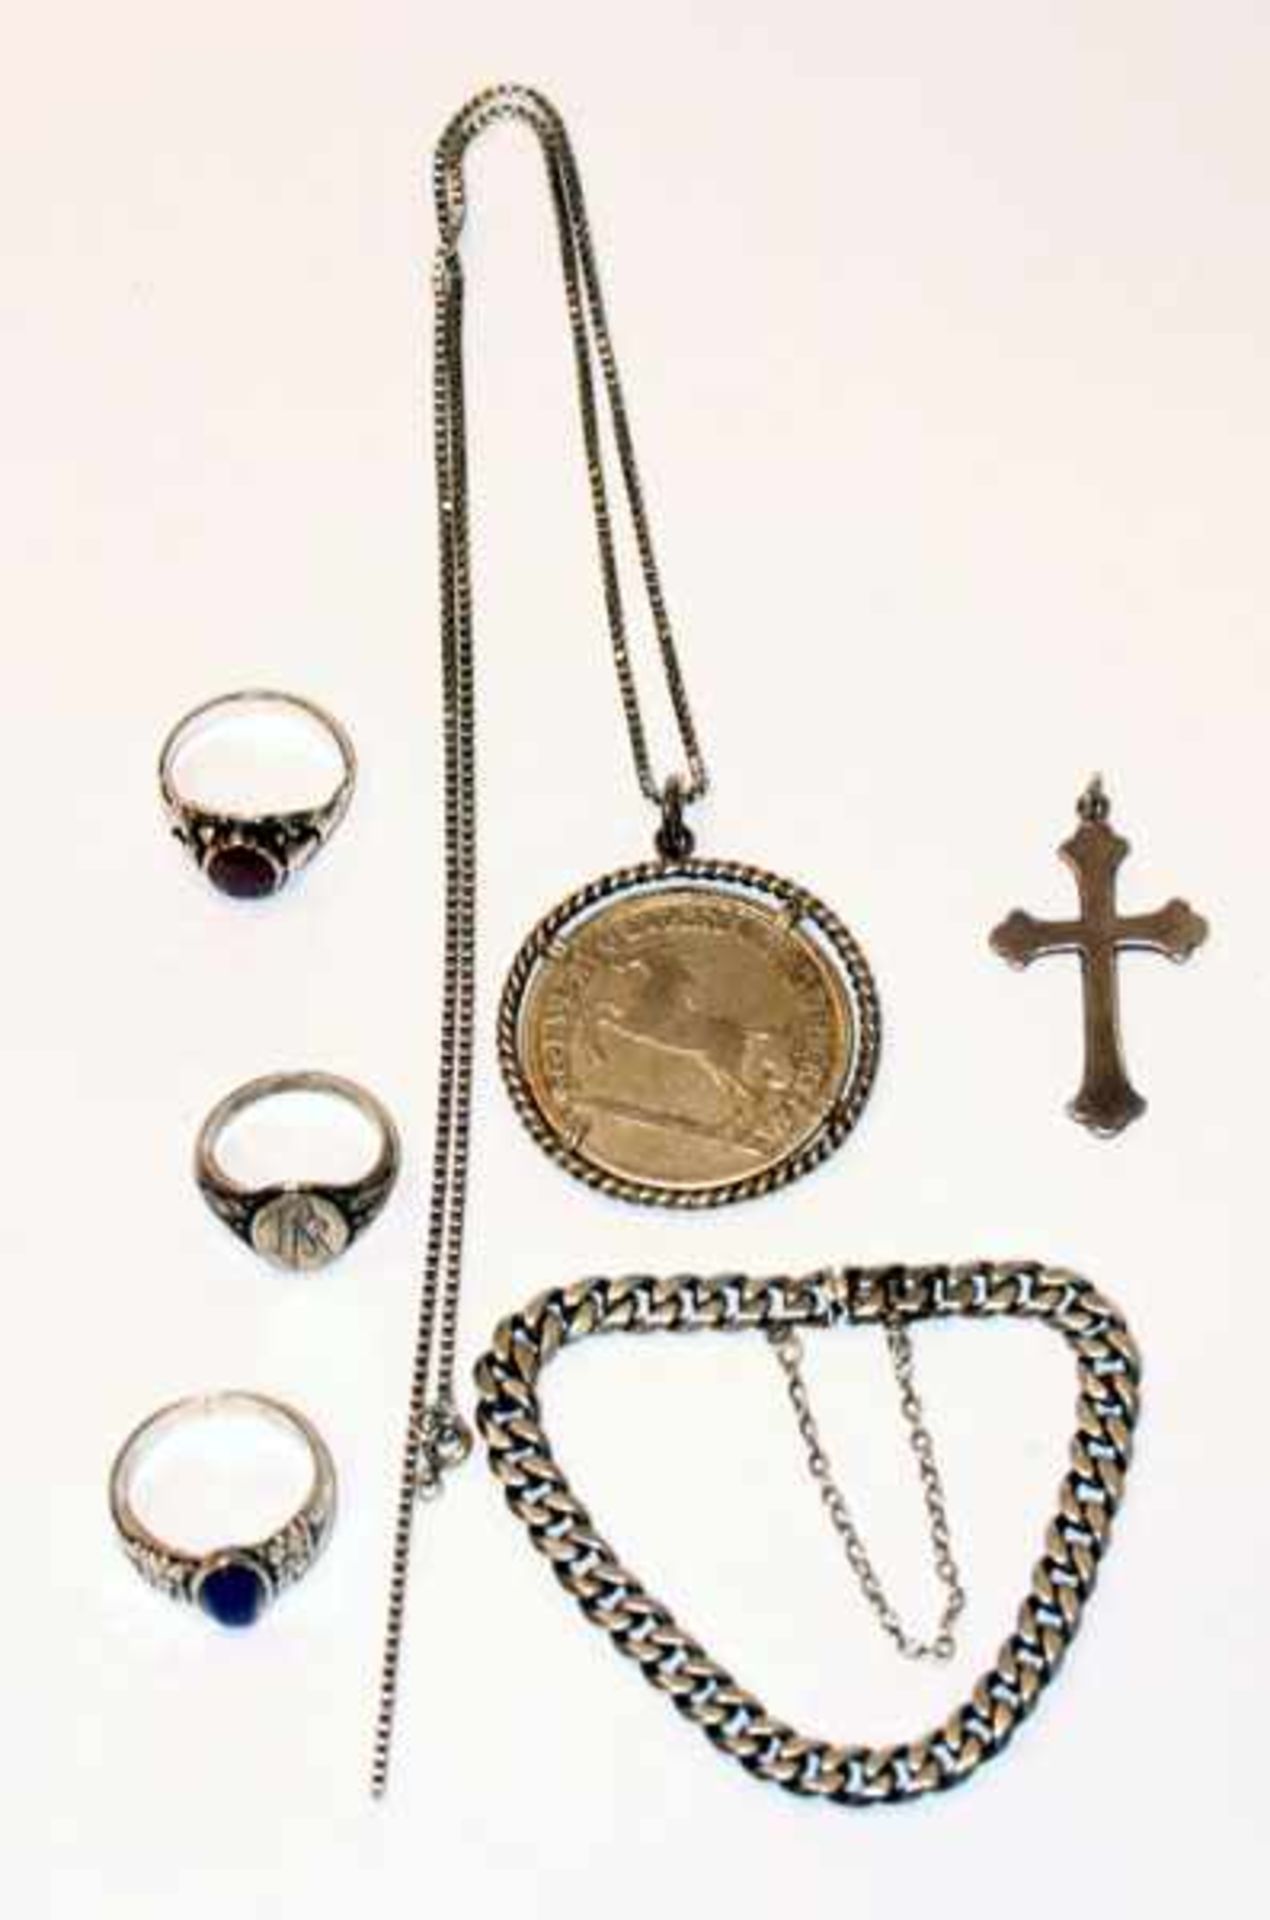 Silber Schmuck-Konvolut: Kette mit Münzanhänger, 3 Ringe, Armband und Kreuzanhänger, teils